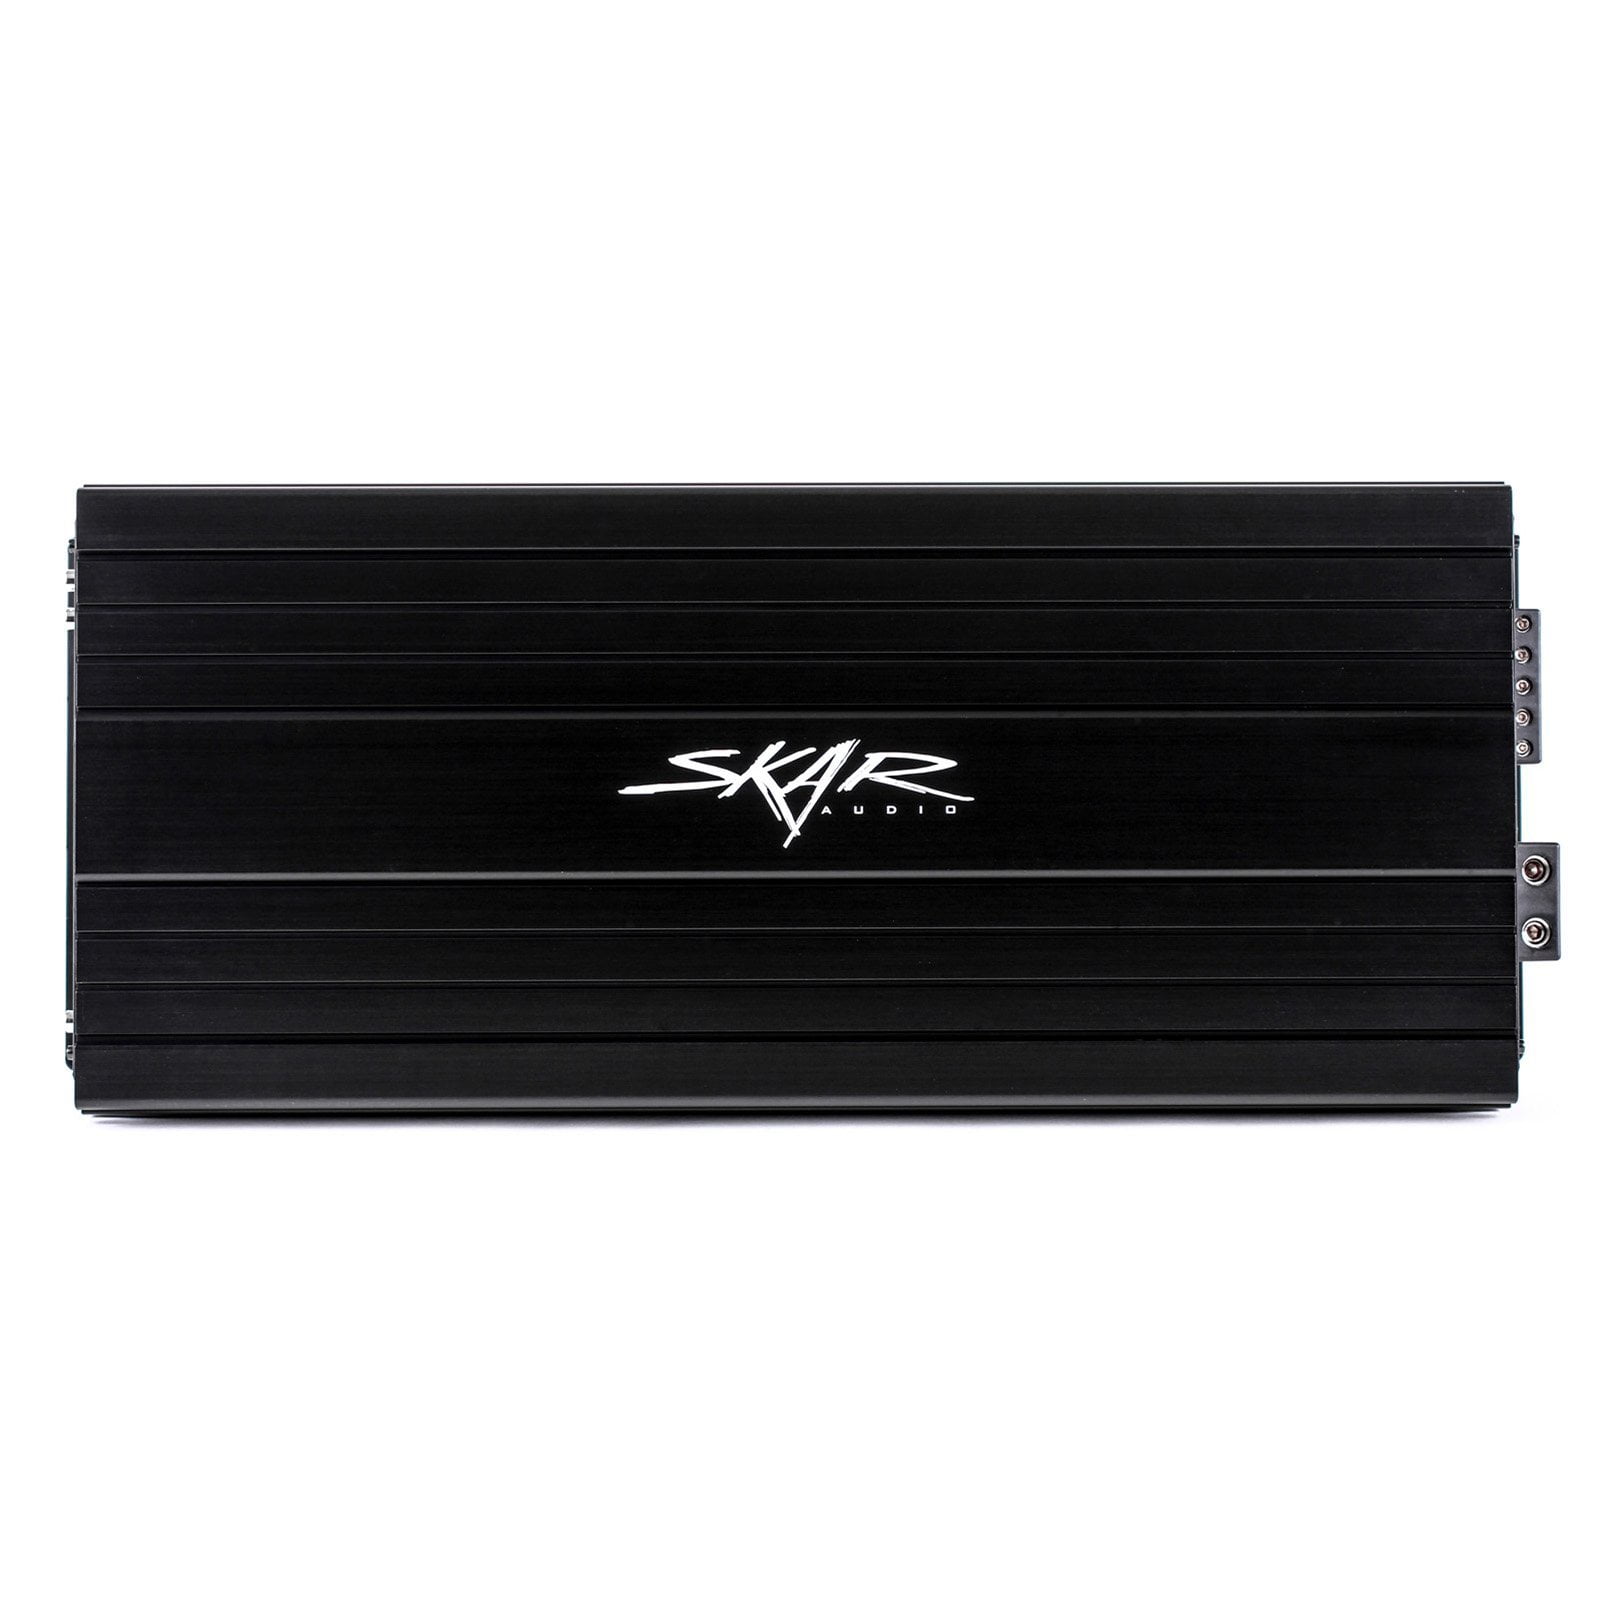 Skar Audio SKv2-2500.1D 2,500 Watt Class D Monoblock Car Amplifier - Front View